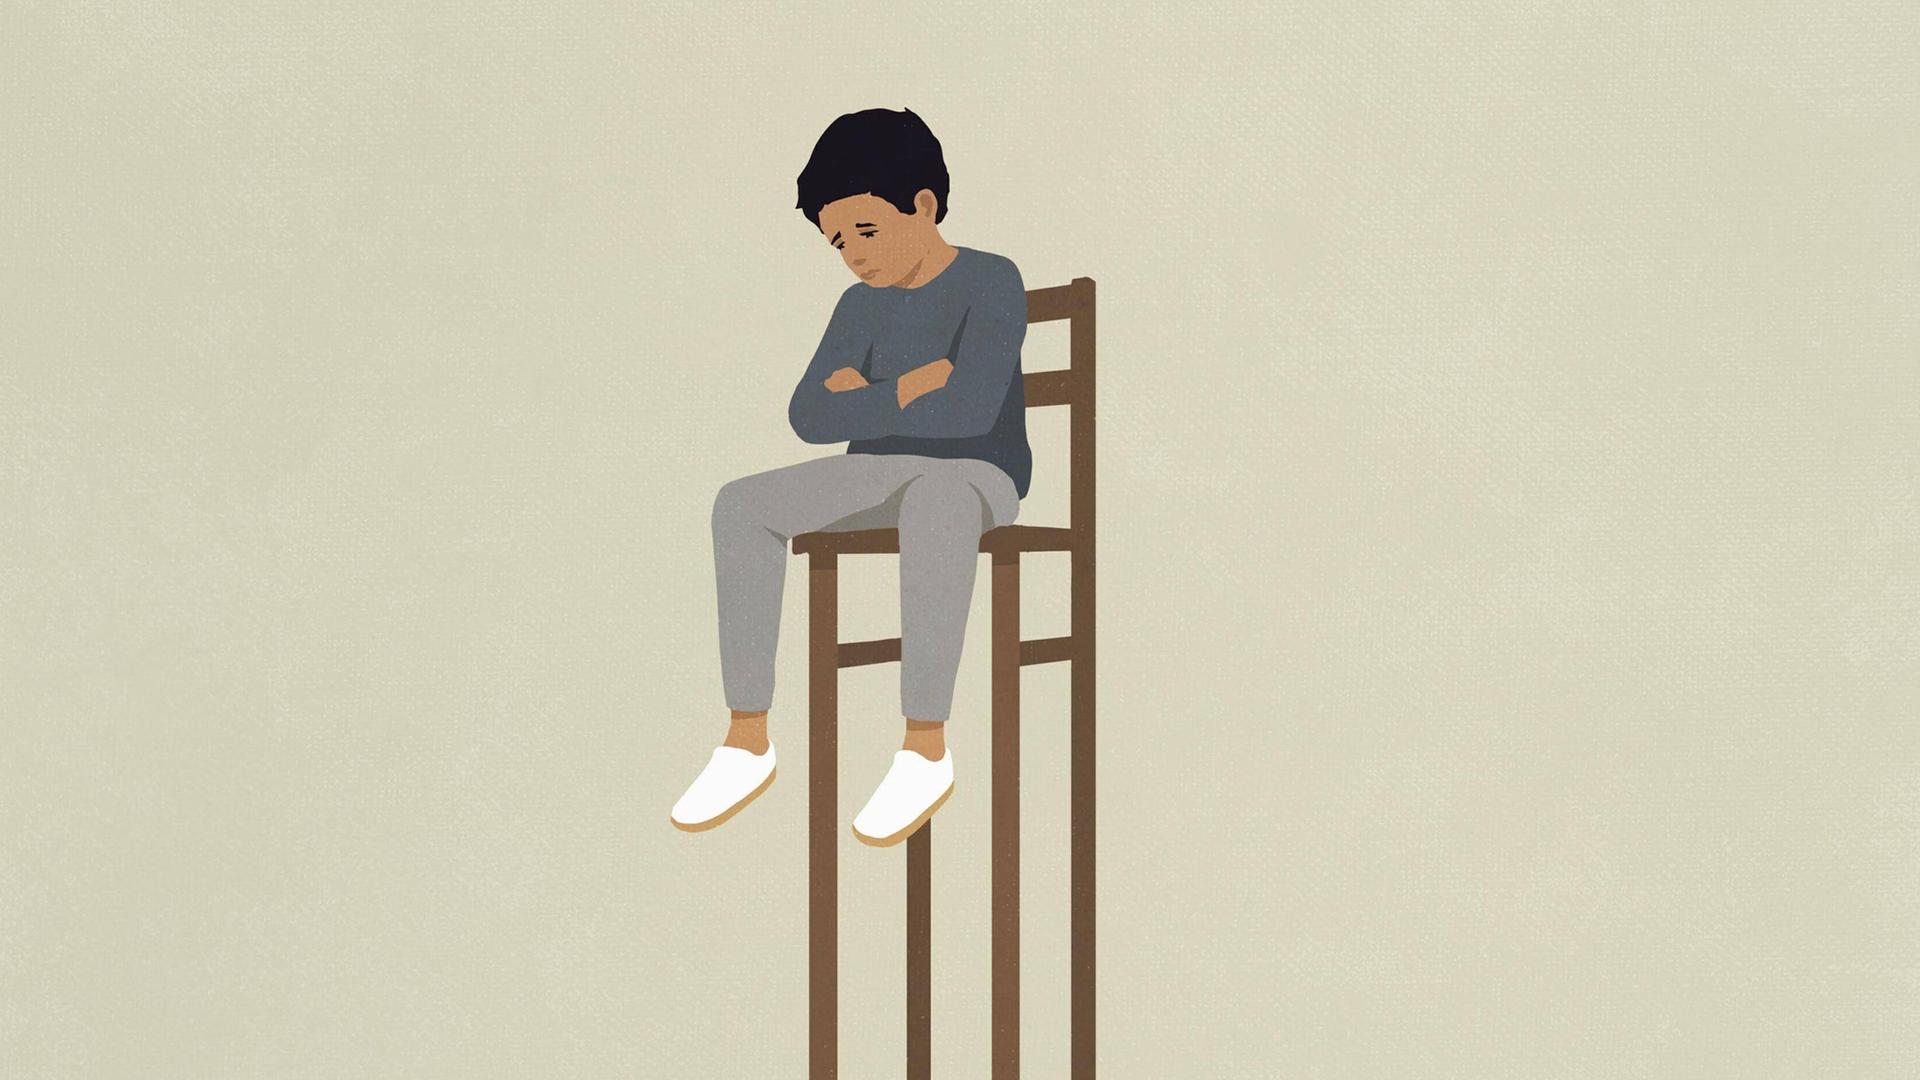 Ein trauriges Kind sitzt auf einem sehr hohen Stuhl und ist einsam